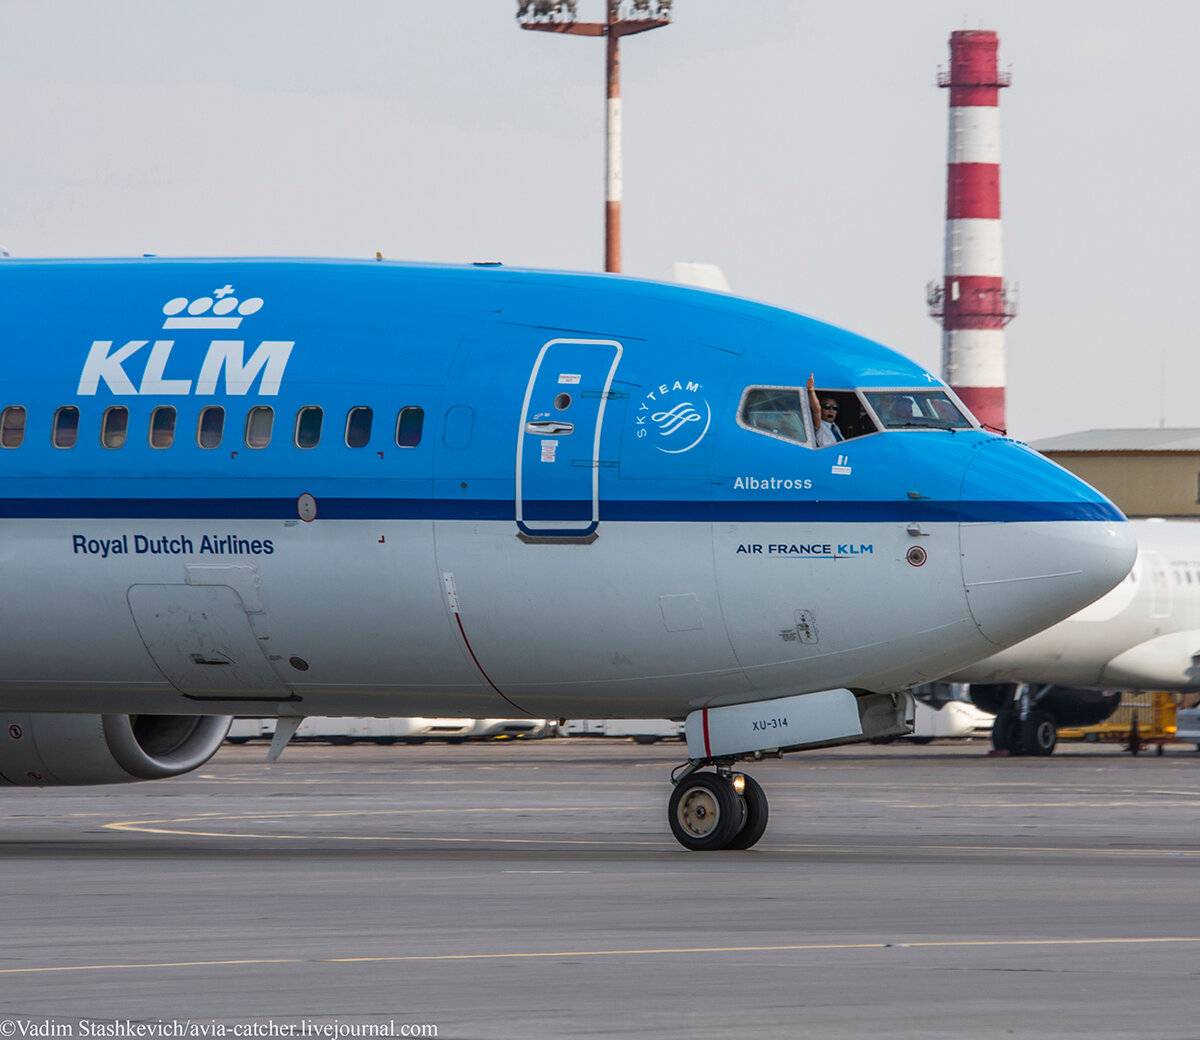 Авиакомпания klm royal dutch airlines — все аварии и катастрофы – советы авиатуристам